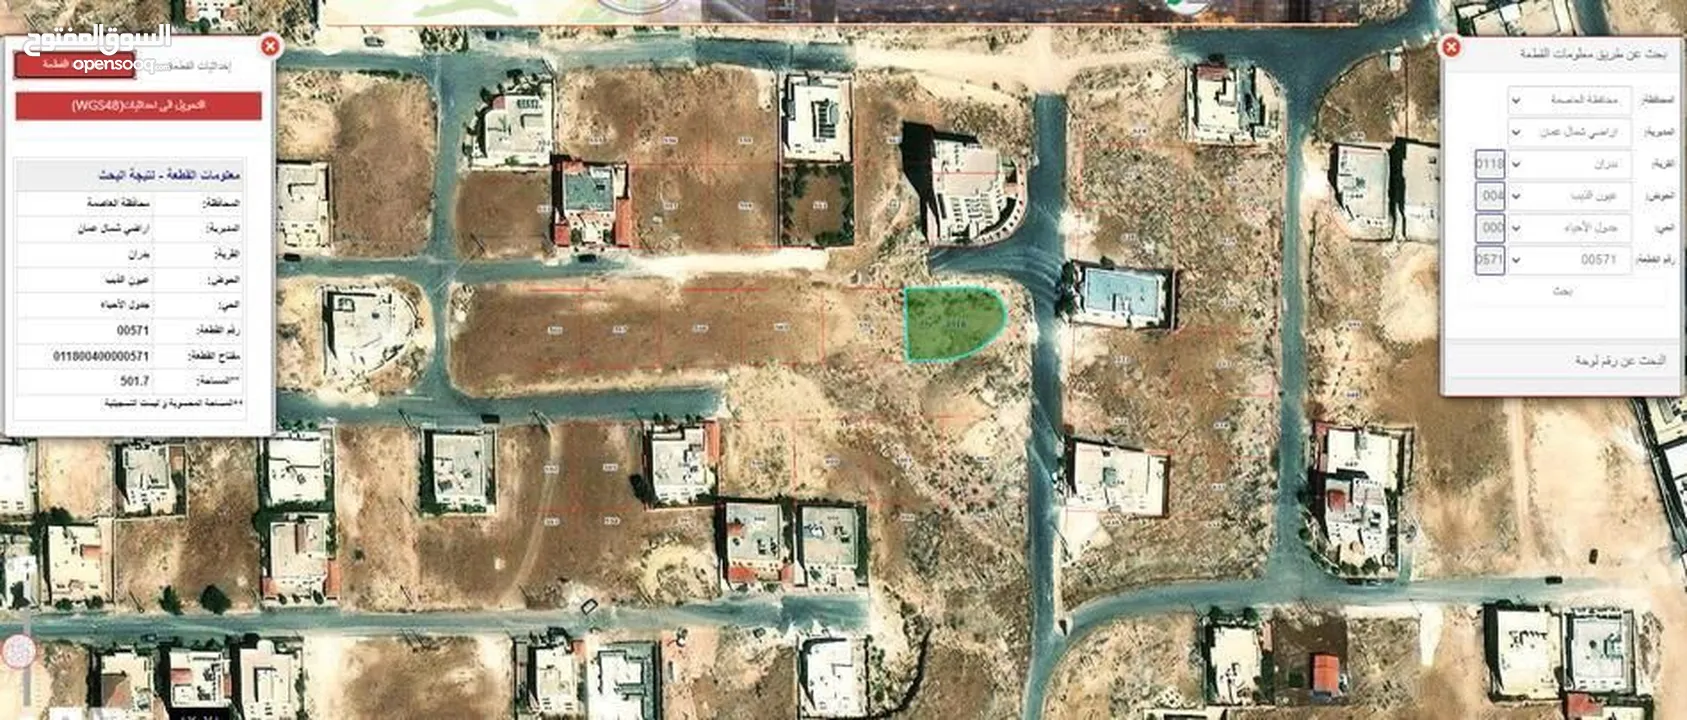 ارض ذات اطلالة عالية بانورامية في شفا بدران عيون الذيب . قطعة ارض 502 م تقع على 3 شوارع للبيع